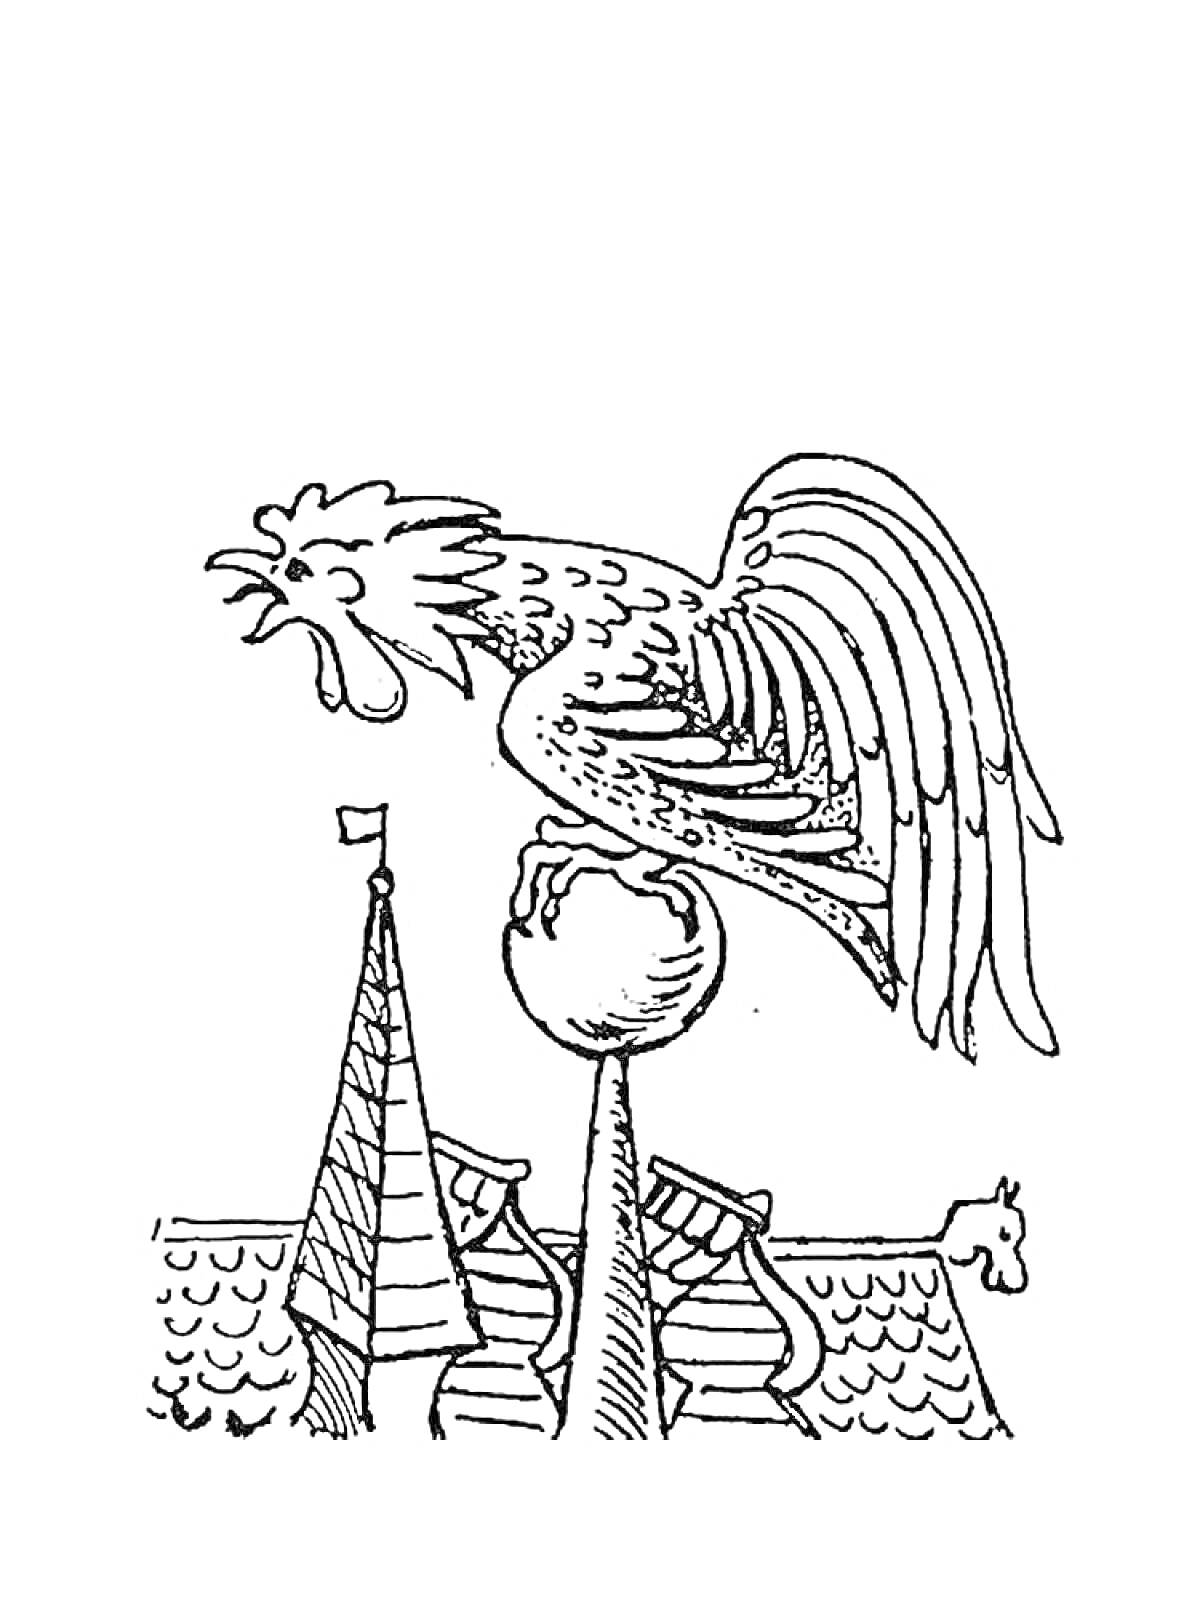 Раскраска Петушок на шпиле, крыша с флюгером и черепицей